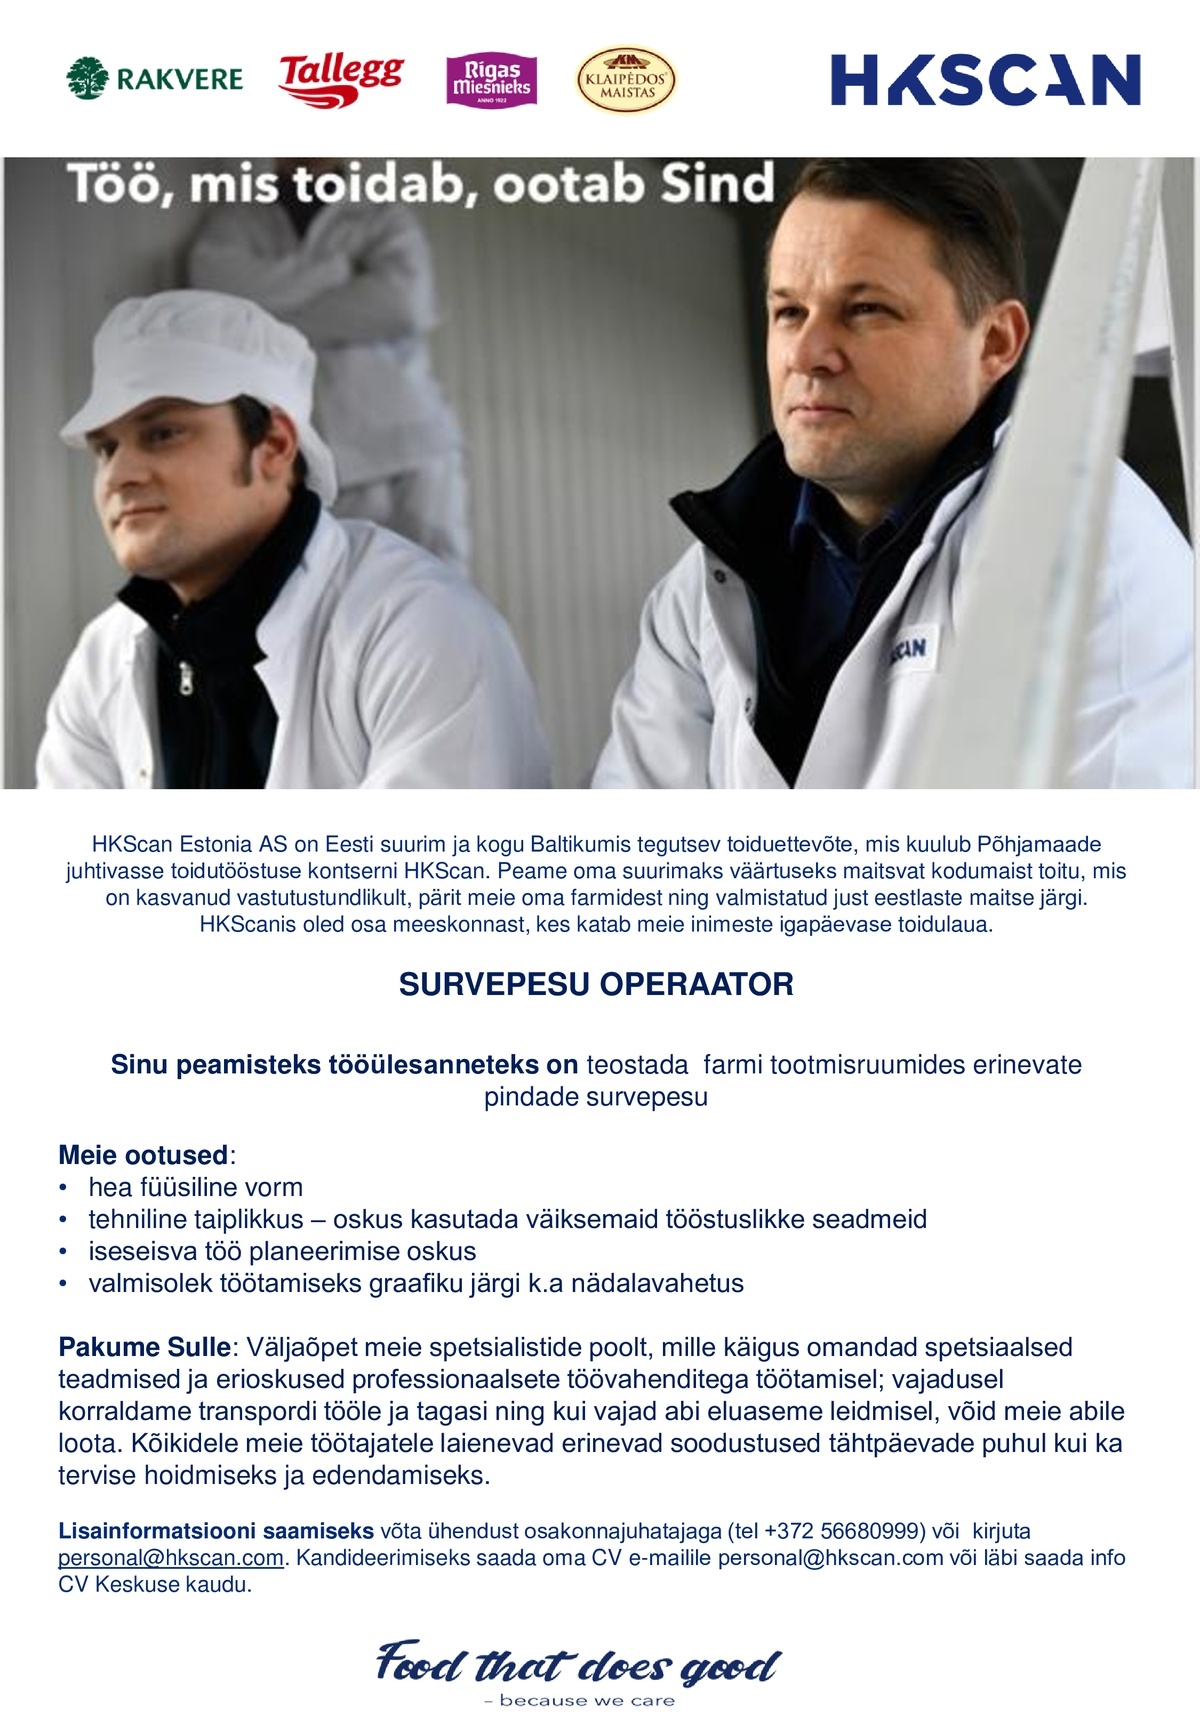 HKScan Estonia AS Survepesuoperaator